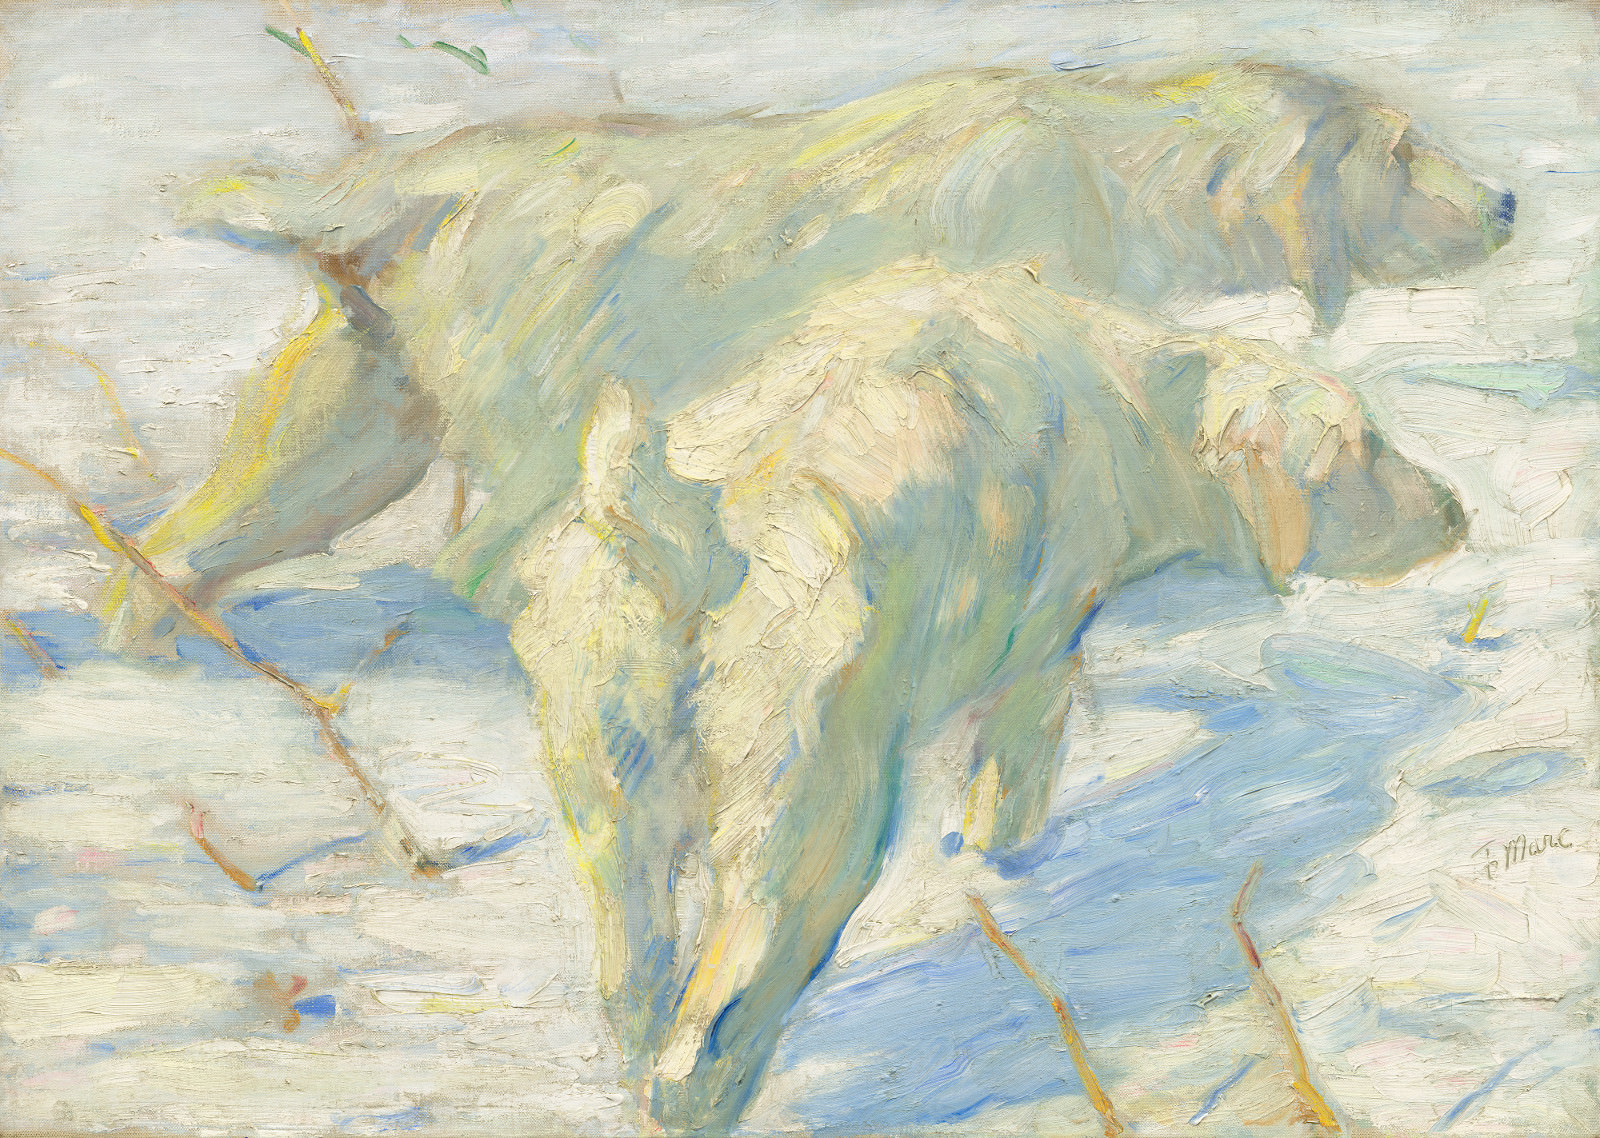 Fig. 11 – Cães Siberianos na Neve, Franz Marc, 1909/1910, óleo sobre tela, 80,5 x 114 cm. National Gallery of Art, Washington. Presente de Mr. e Mrs. Stephen M. Kellen.